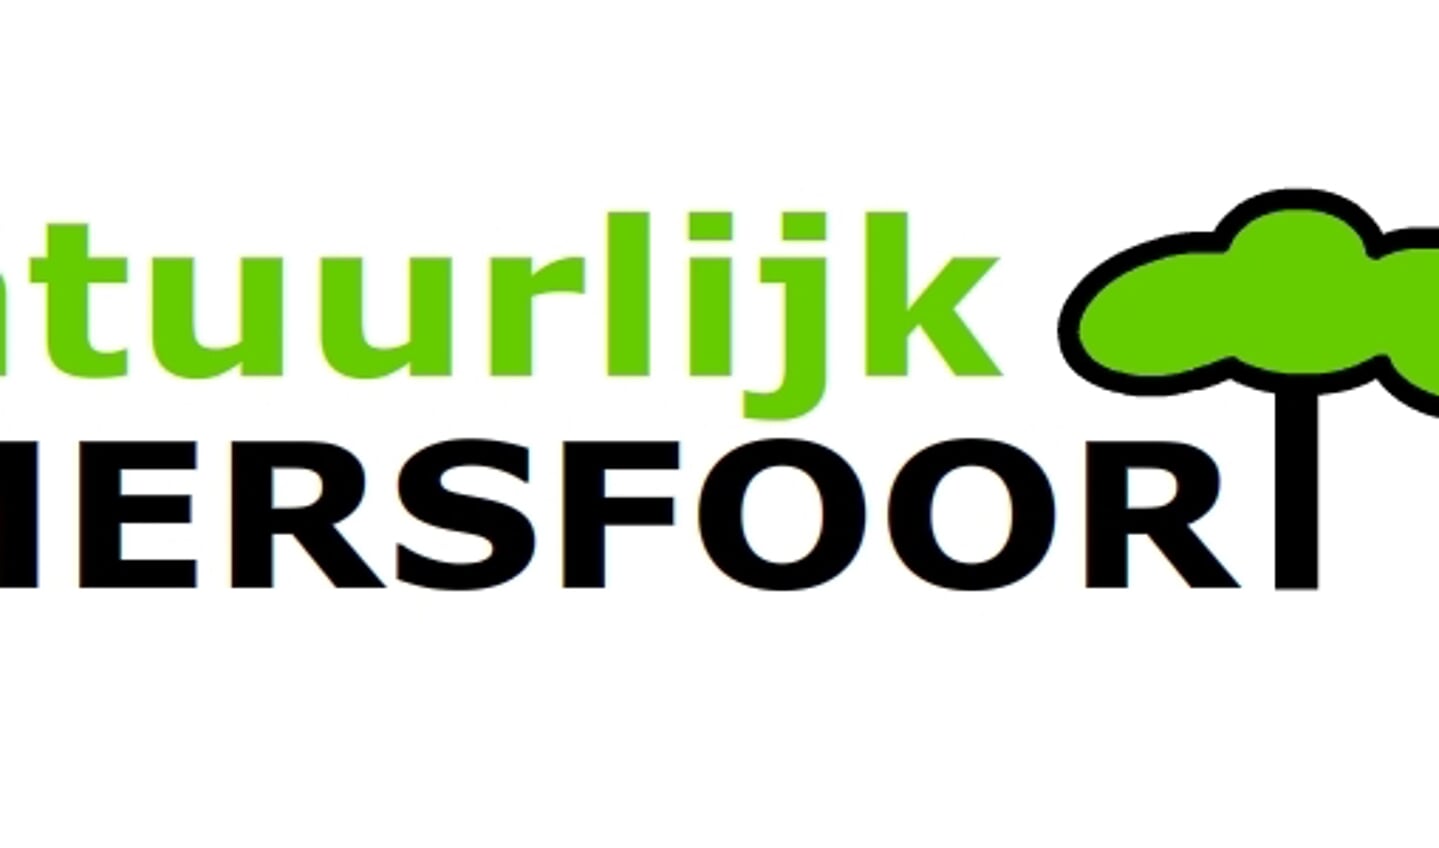 Het logo van Natuurlijk Amersfoort, de fractie die tijdelijk 'Lijst Molenkamp' moet heten. 